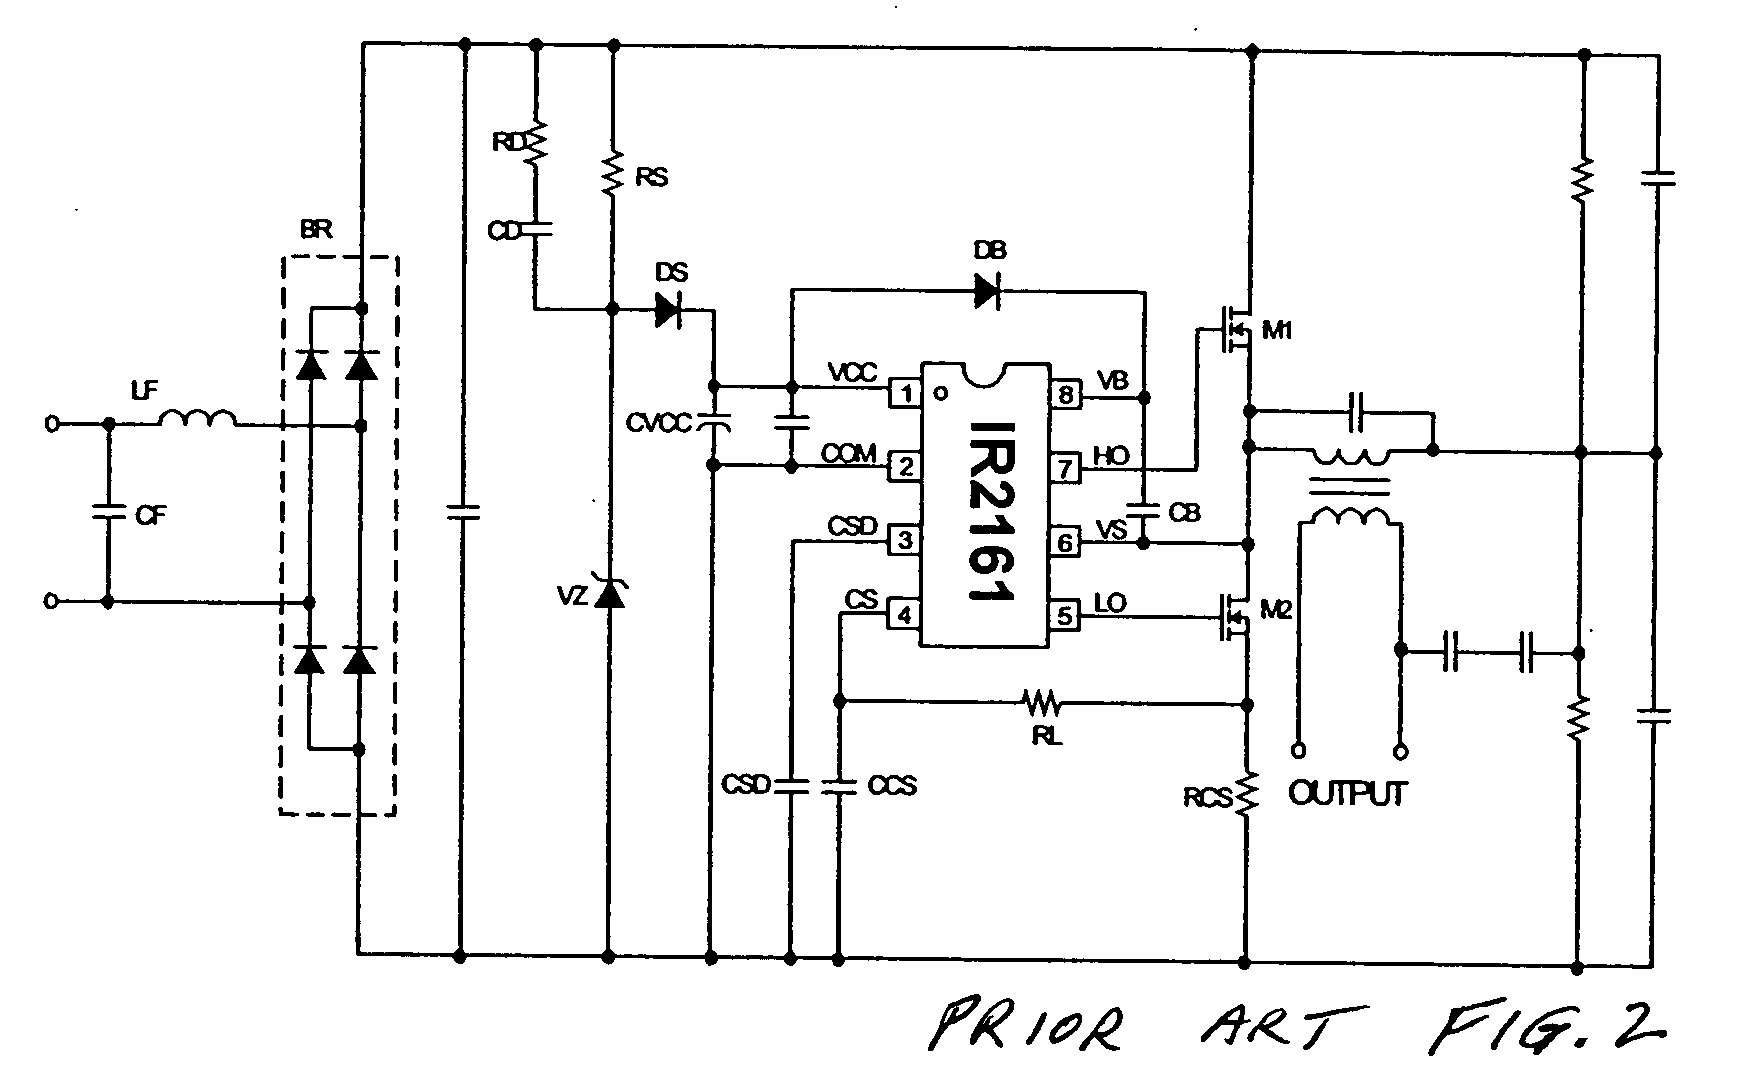 Applications of halogen convertor control IC